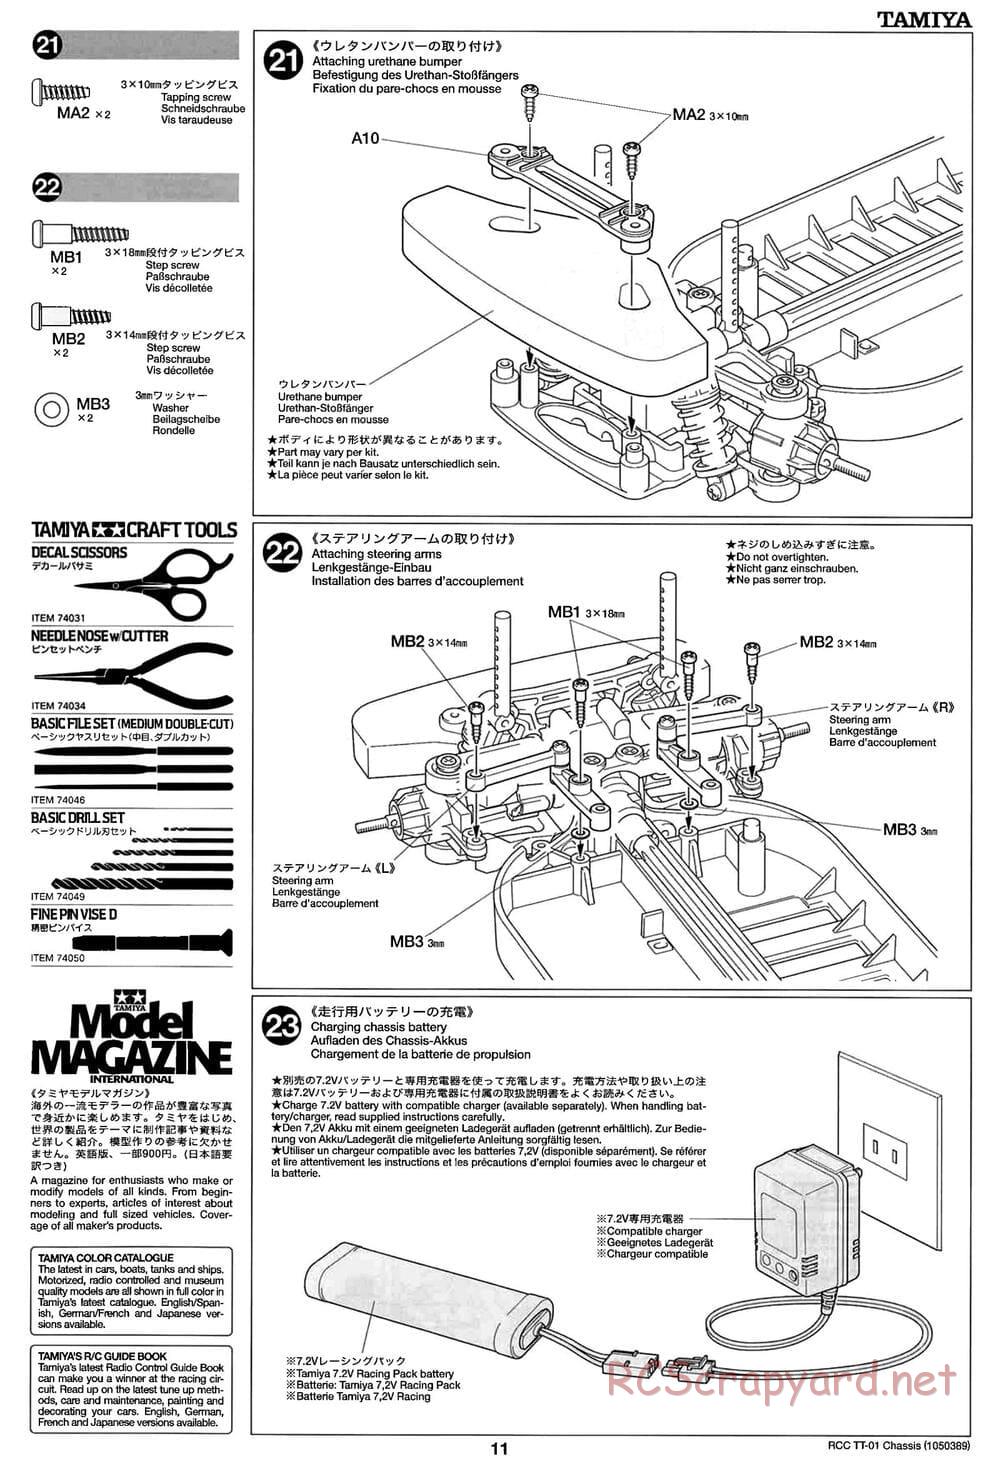 Tamiya - TT-01 Chassis - Manual - Page 11